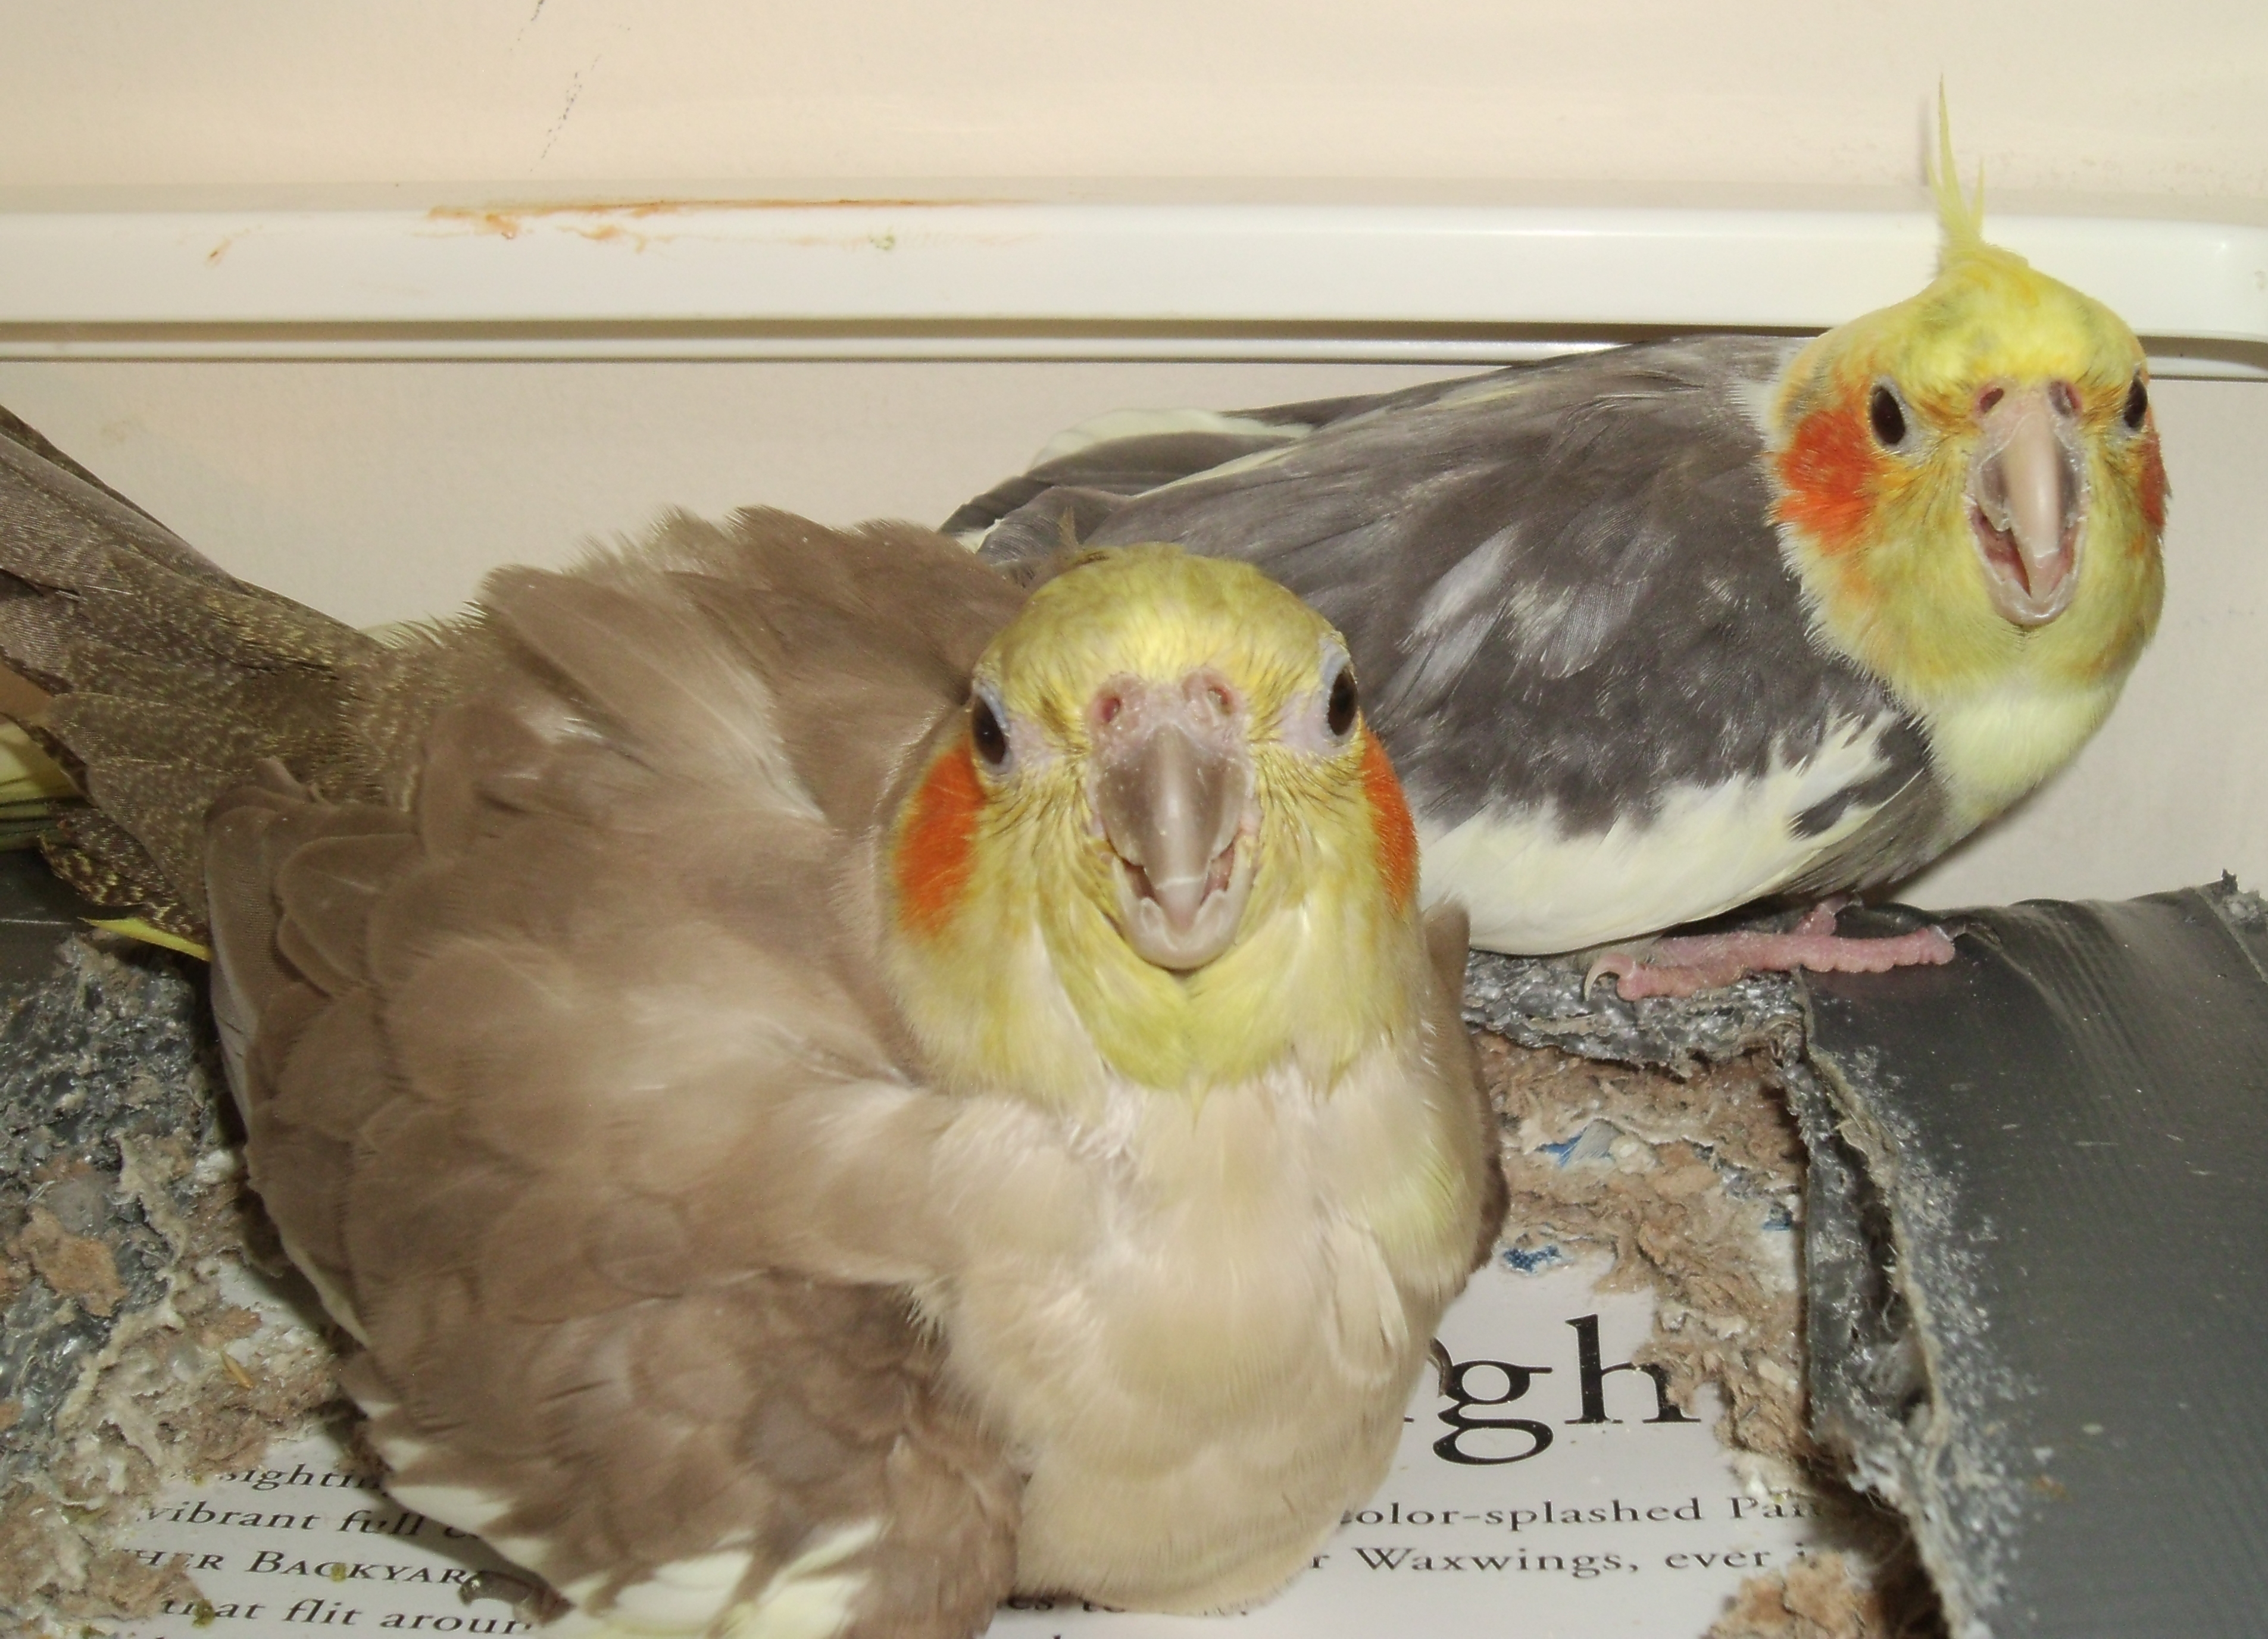 nesting-cockatiels-by-windthin-on-deviantart